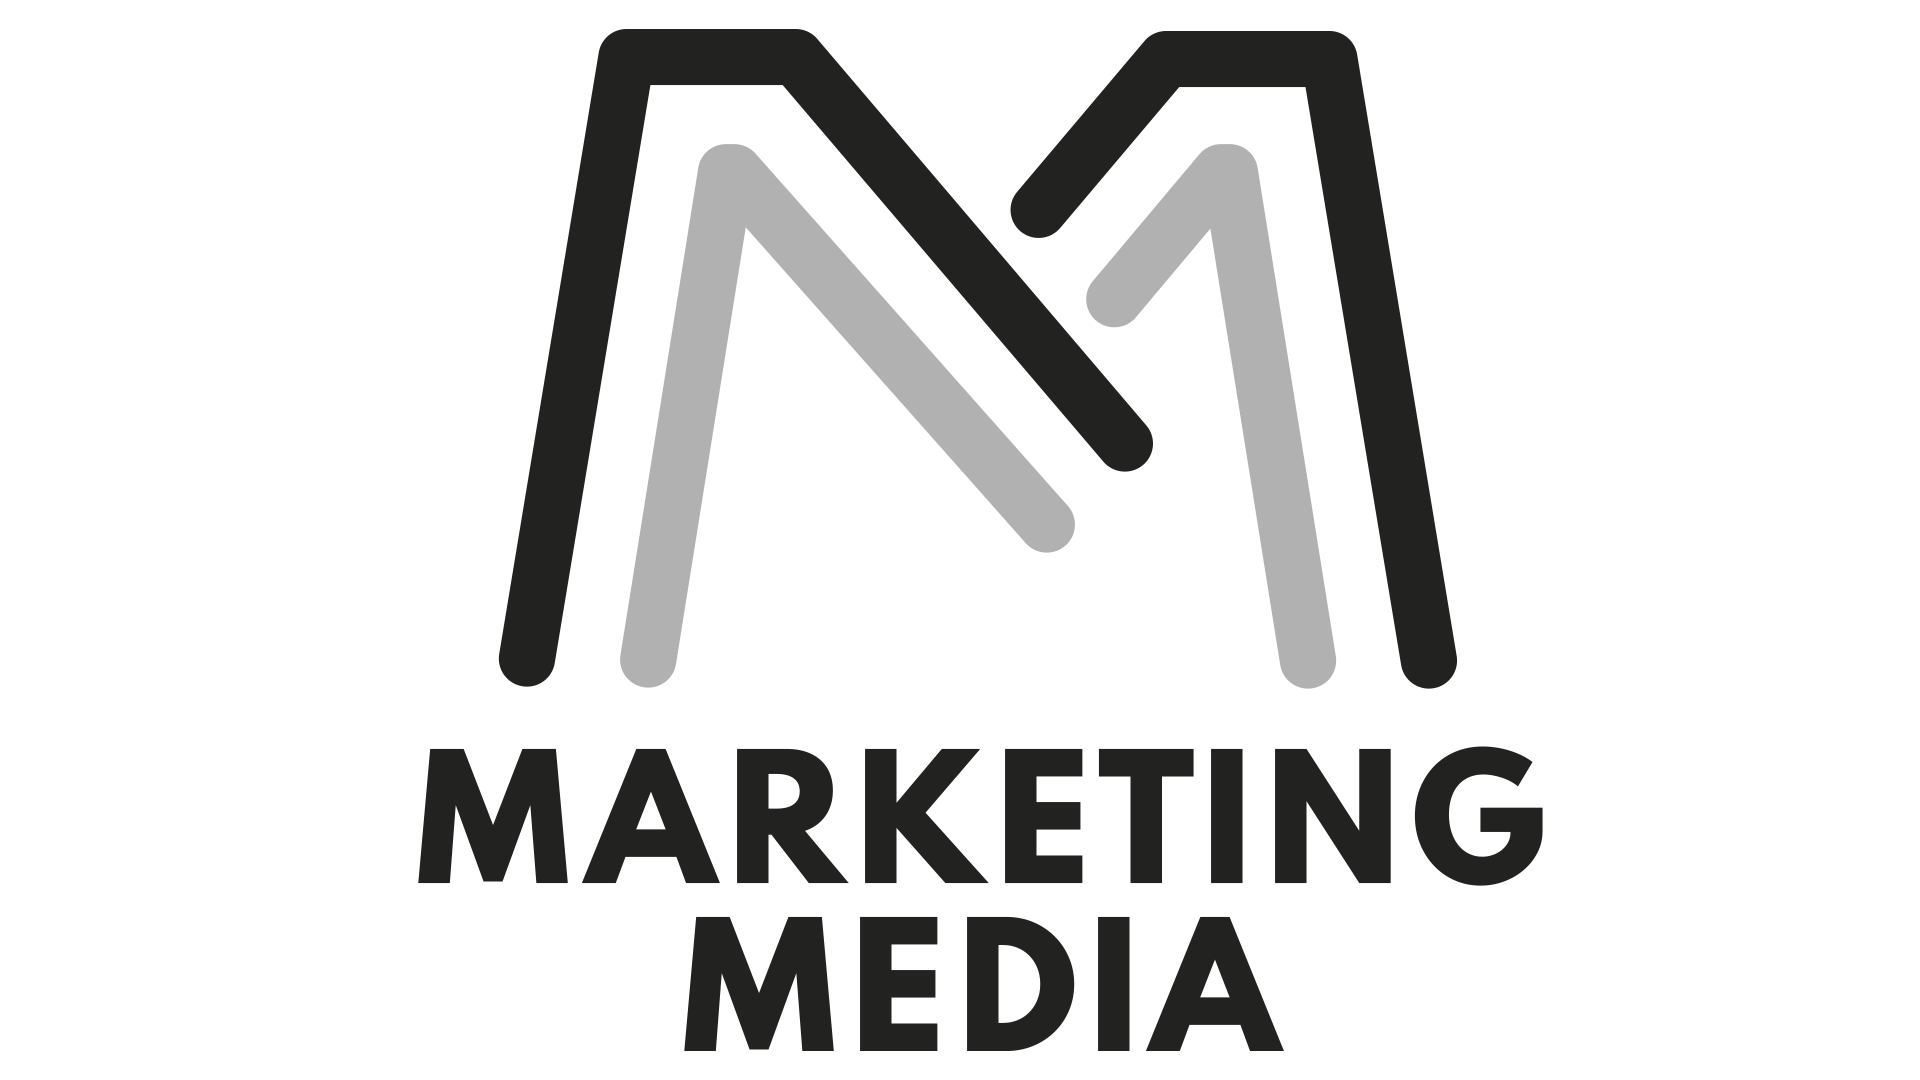 Marketing Media